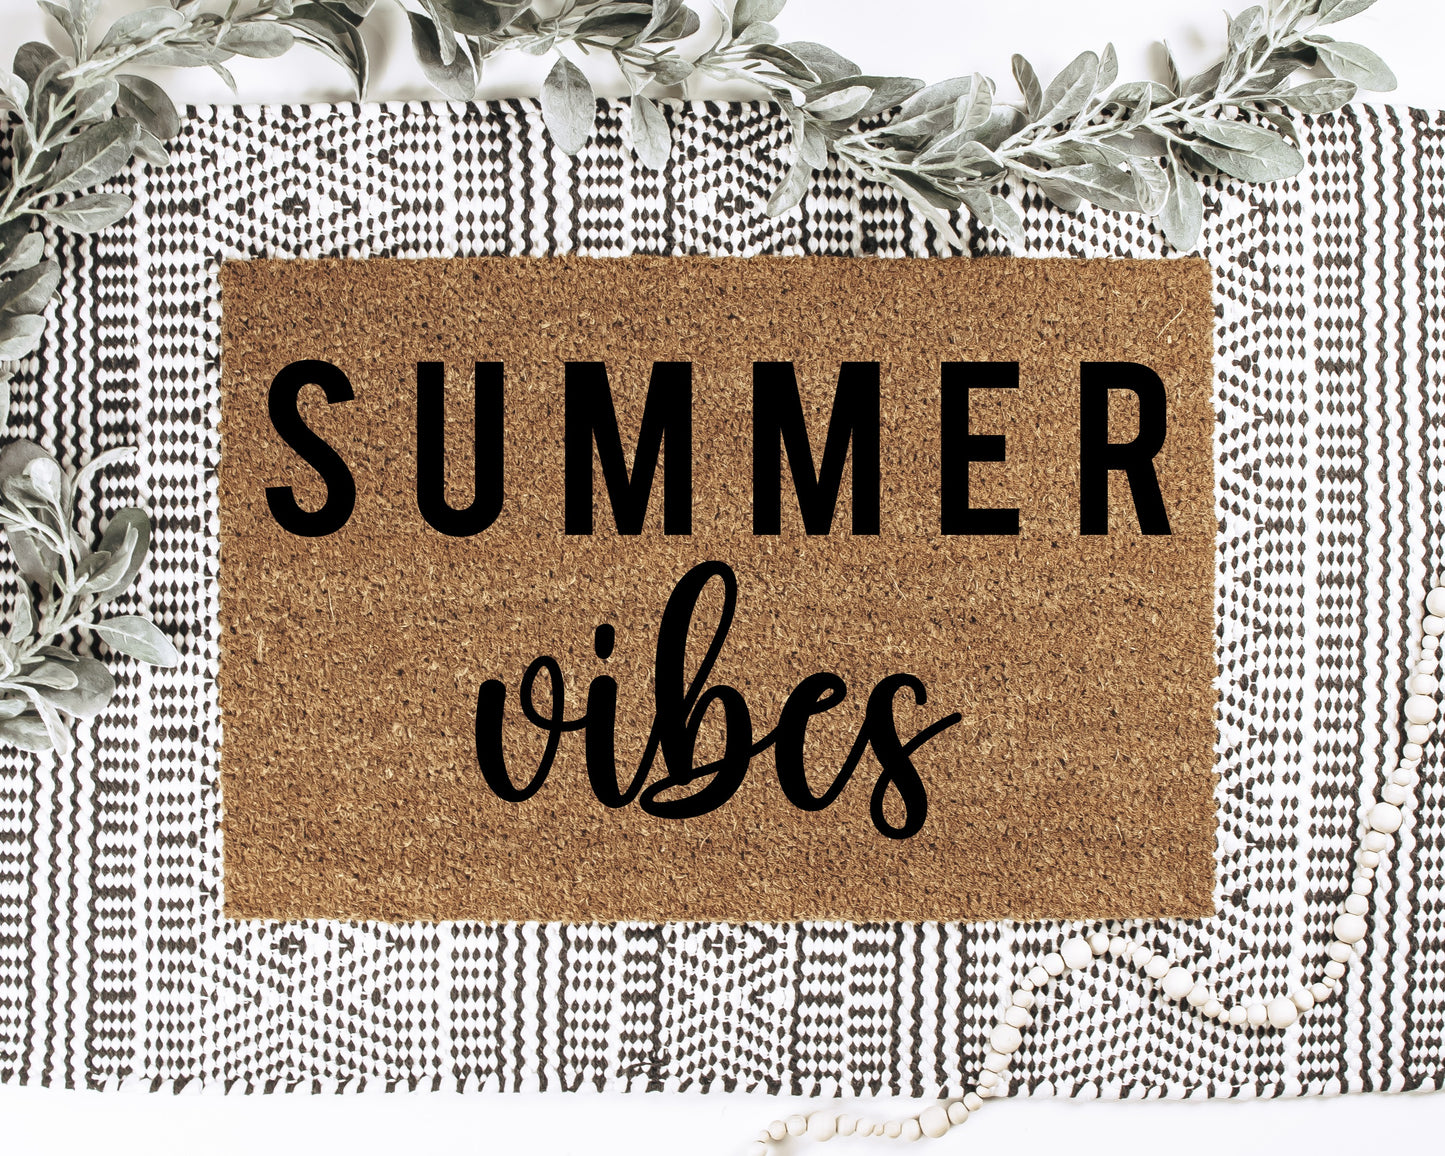 Summer Vibes Doormat